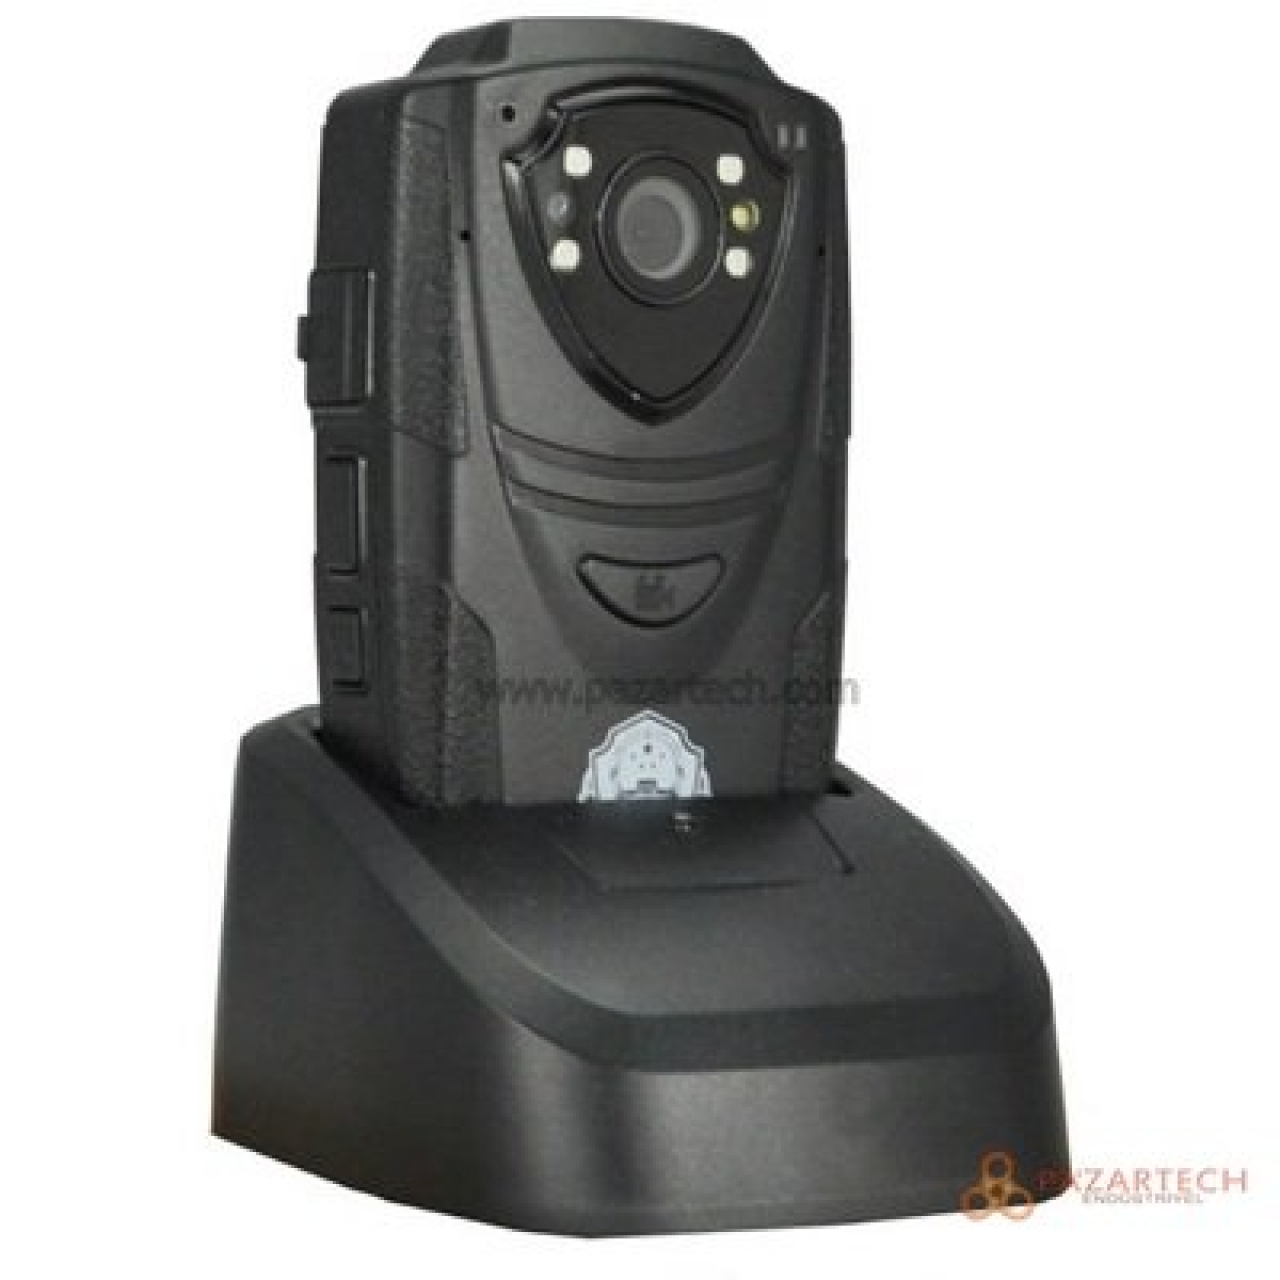 WINWIN ST-910 Güvenlik Yaka Kamerası GPS (Polis,Askeri,vb Kullanım İçin)